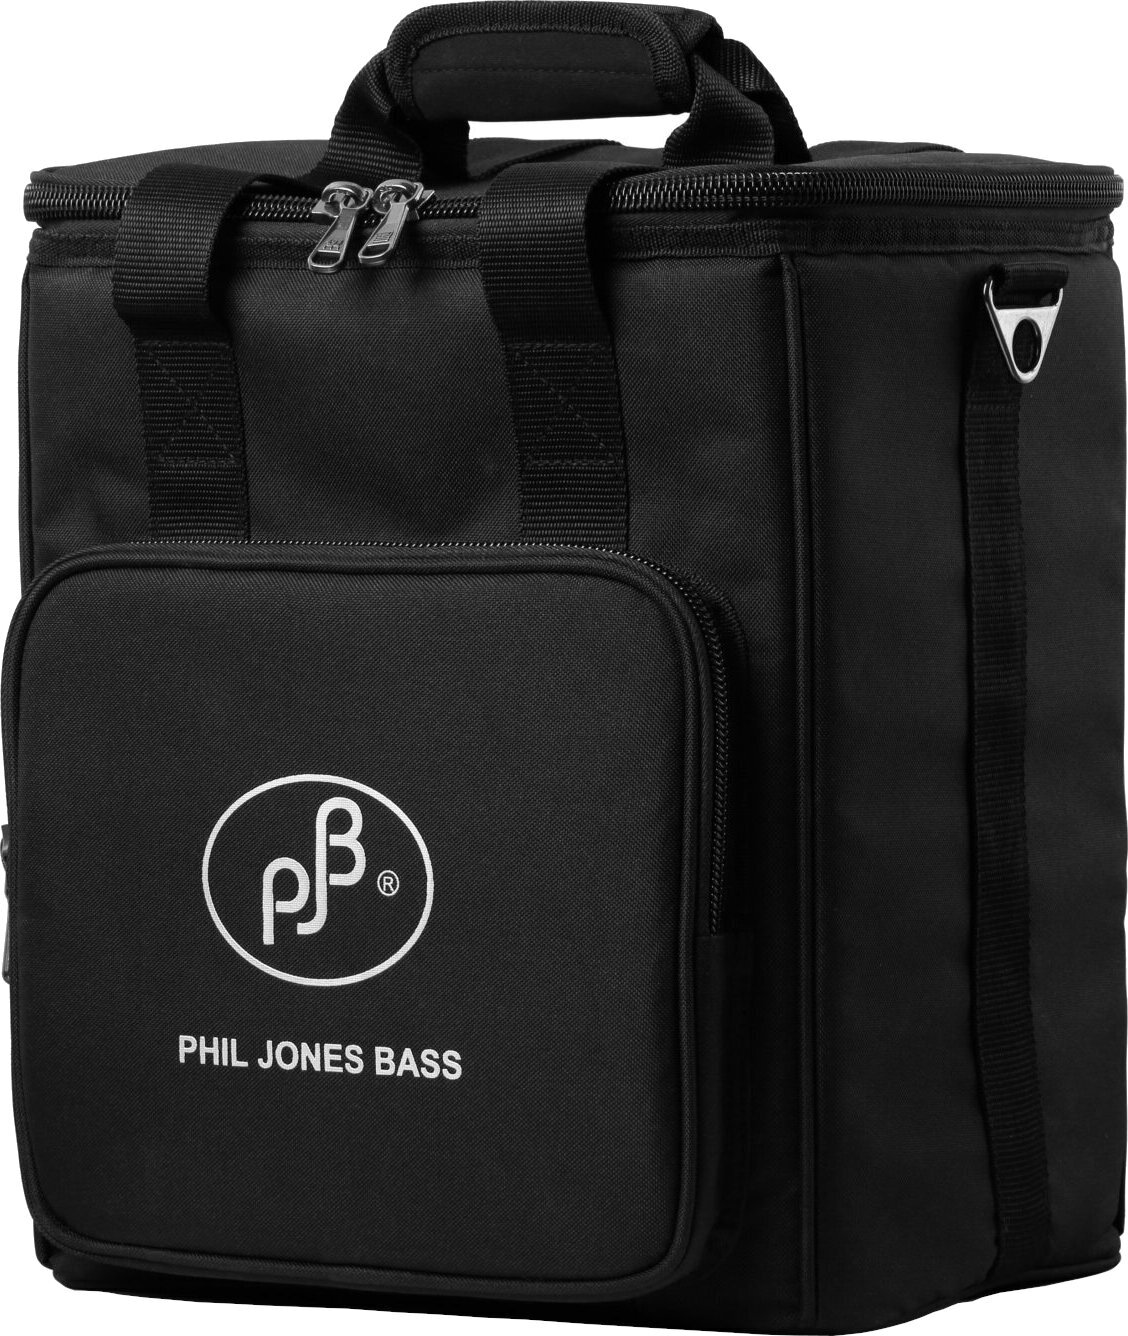 Hoes voor basversterker Phil Jones Bass Carry Bag BG-120 Hoes voor basversterker